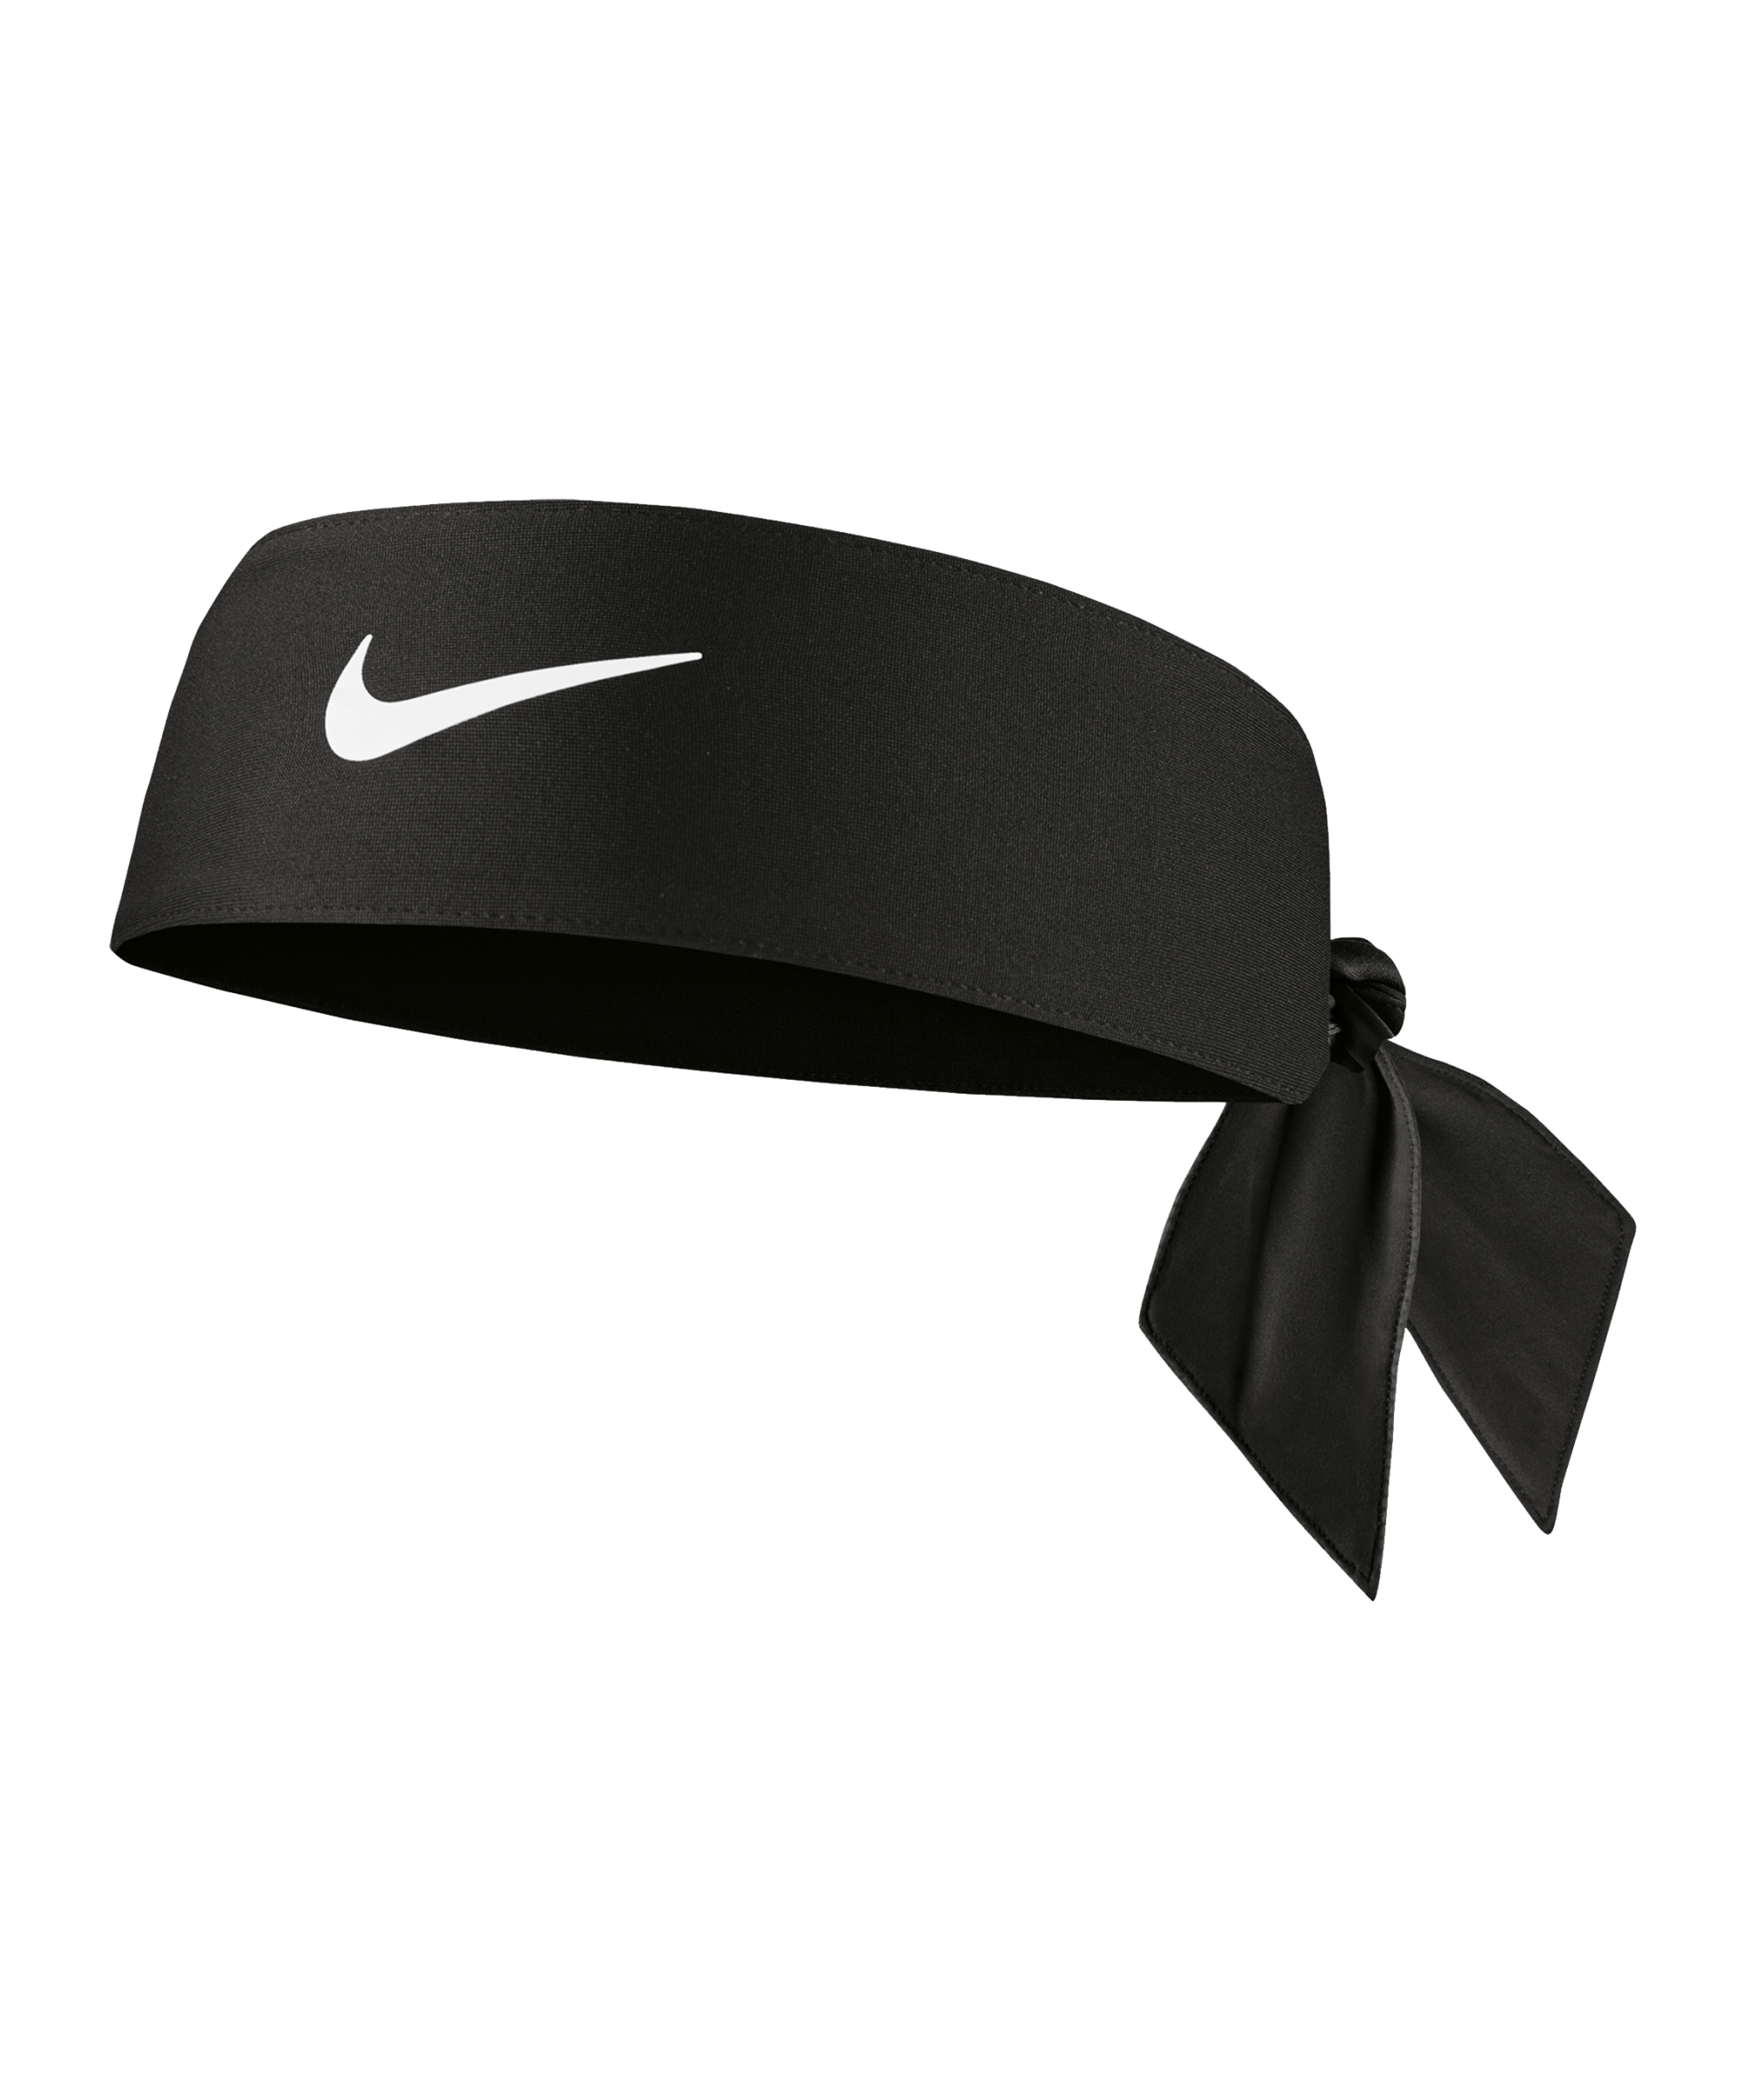 Stirnband Nike DRI-FIT HEAD TIE 4.0